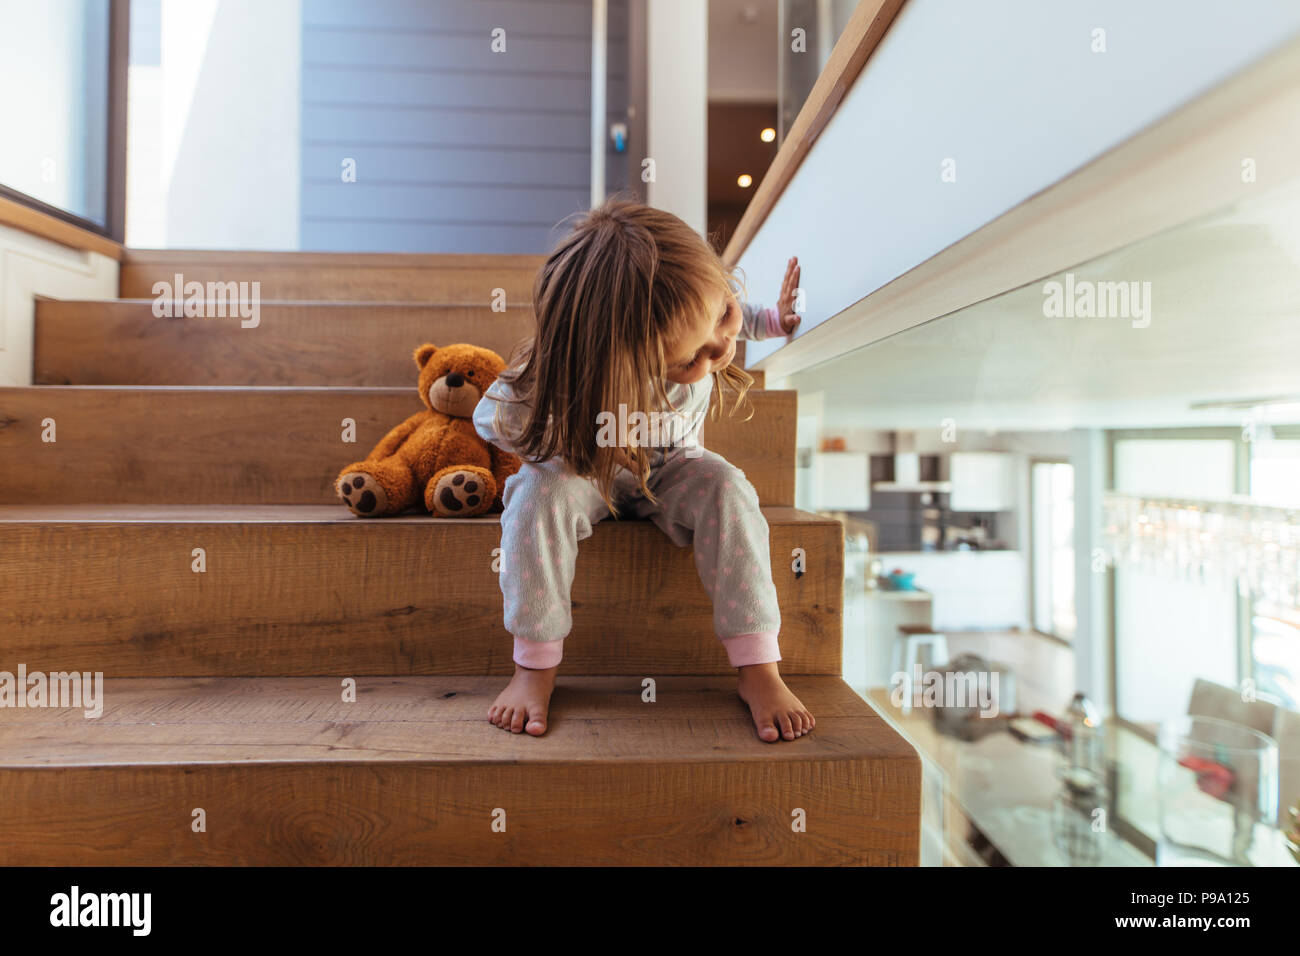 Fille D'enfant Se Tenant Sur L'escalier à La Maison Image stock - Image du  personne, adolescents: 61777441